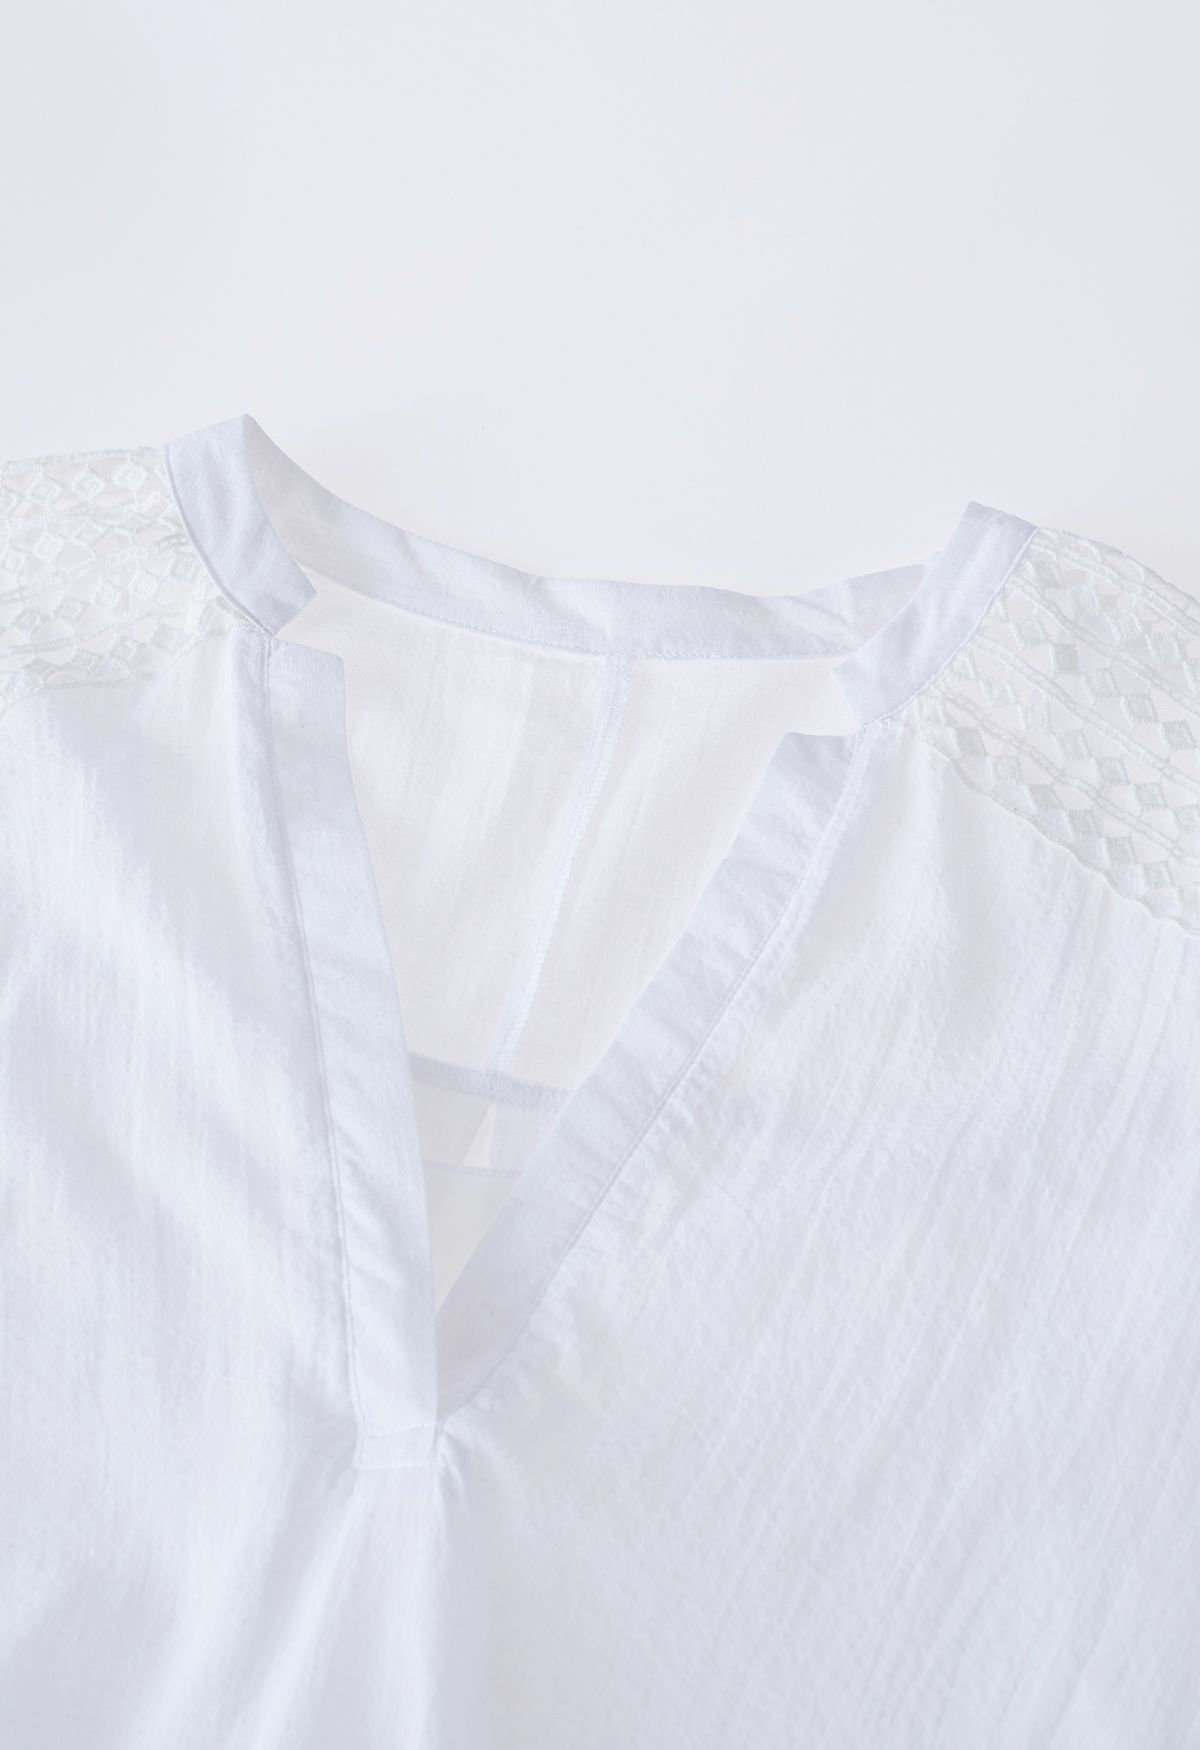 V-Neck Crochet Sleeve Cotton Top in White